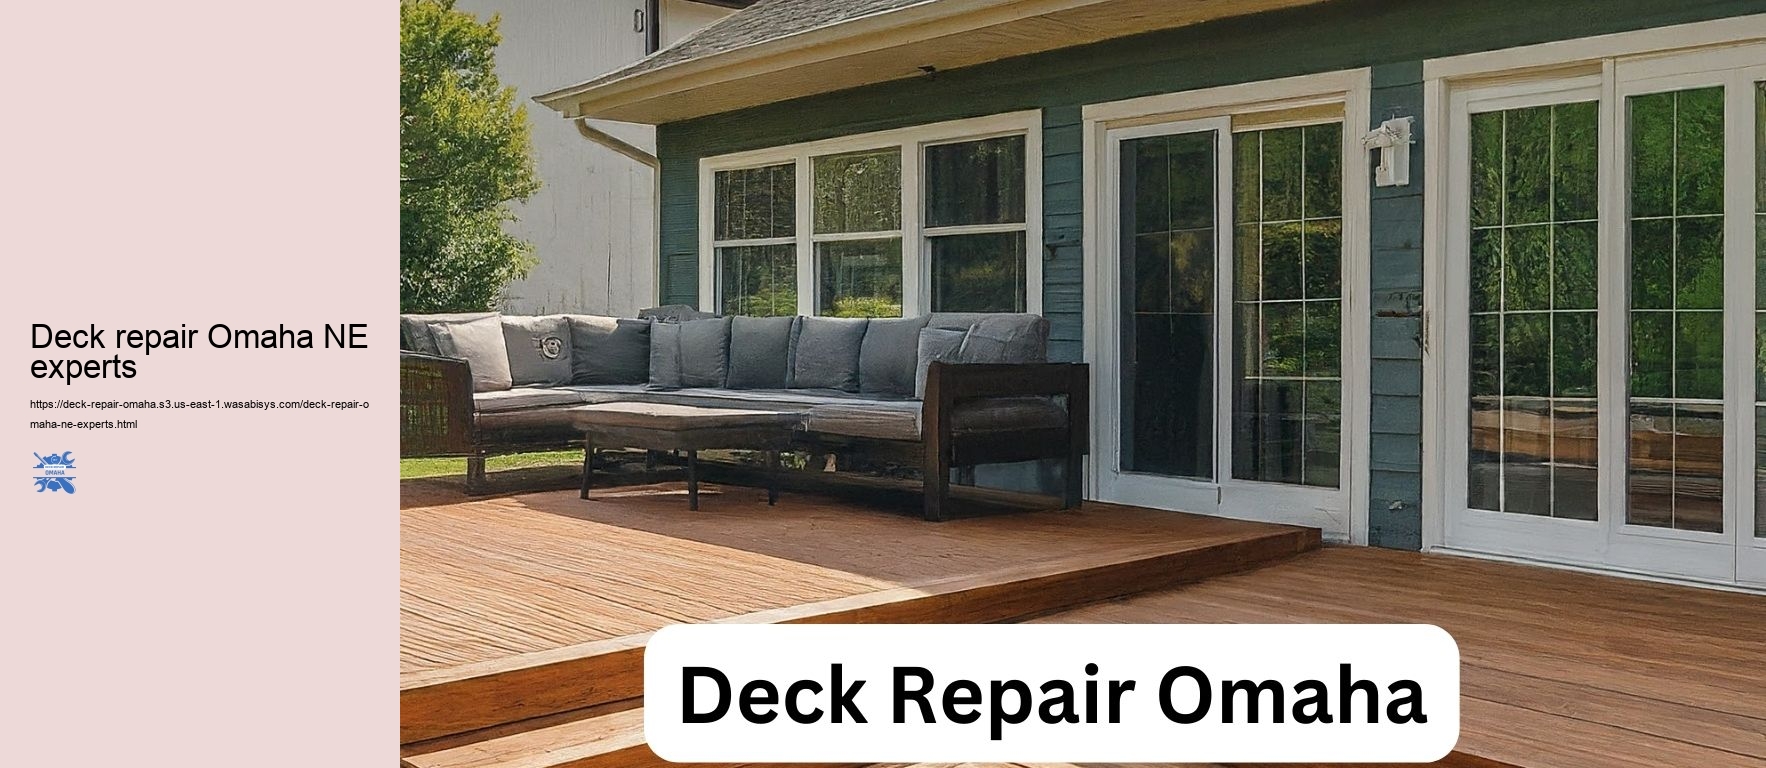 Deck repair Omaha NE experts